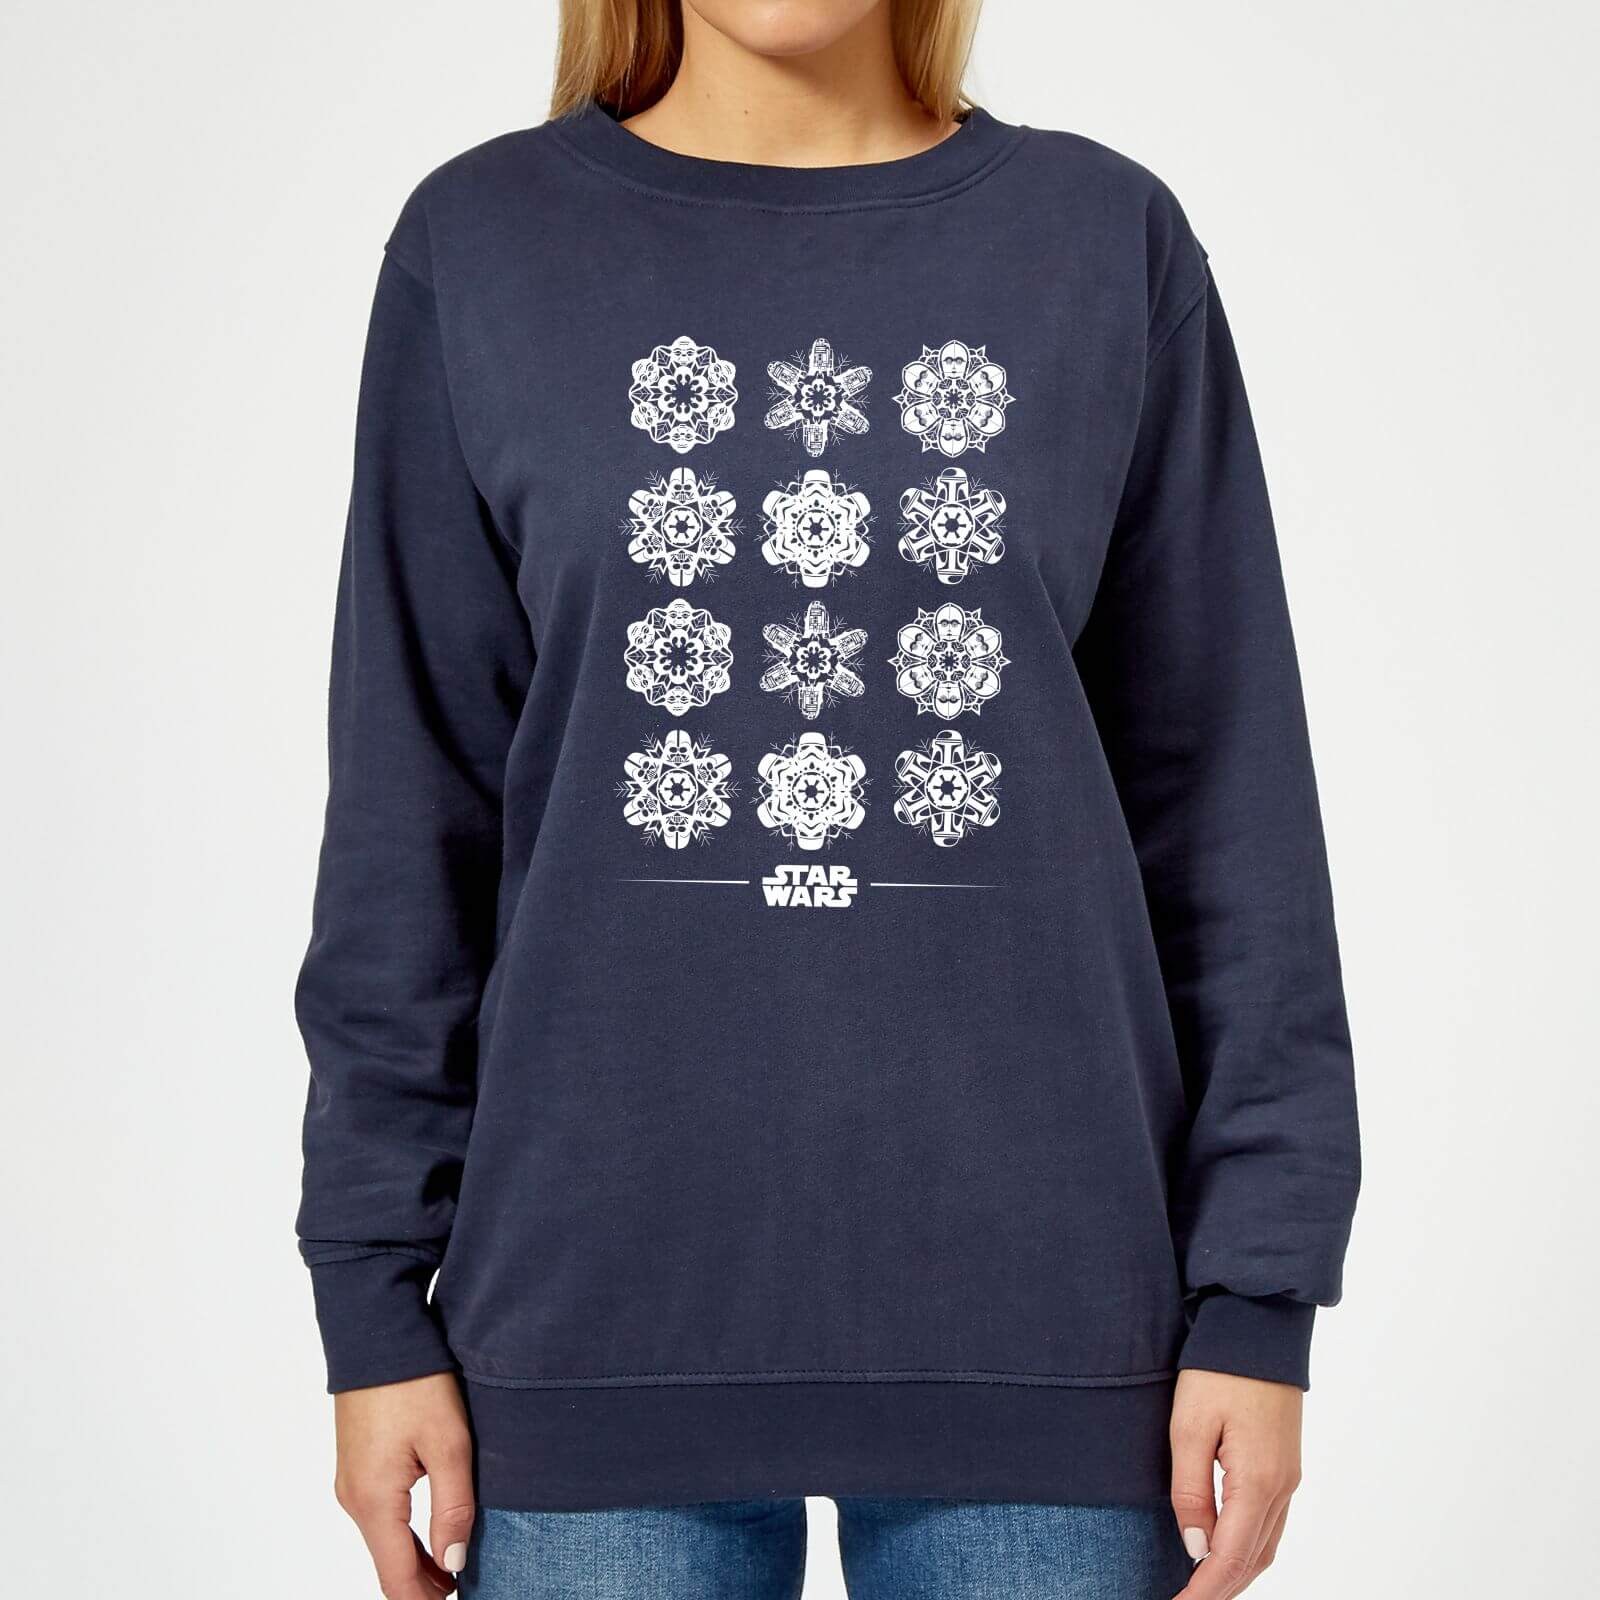 Star Wars Snowflake Women's Christmas Sweatshirt - Navy - S